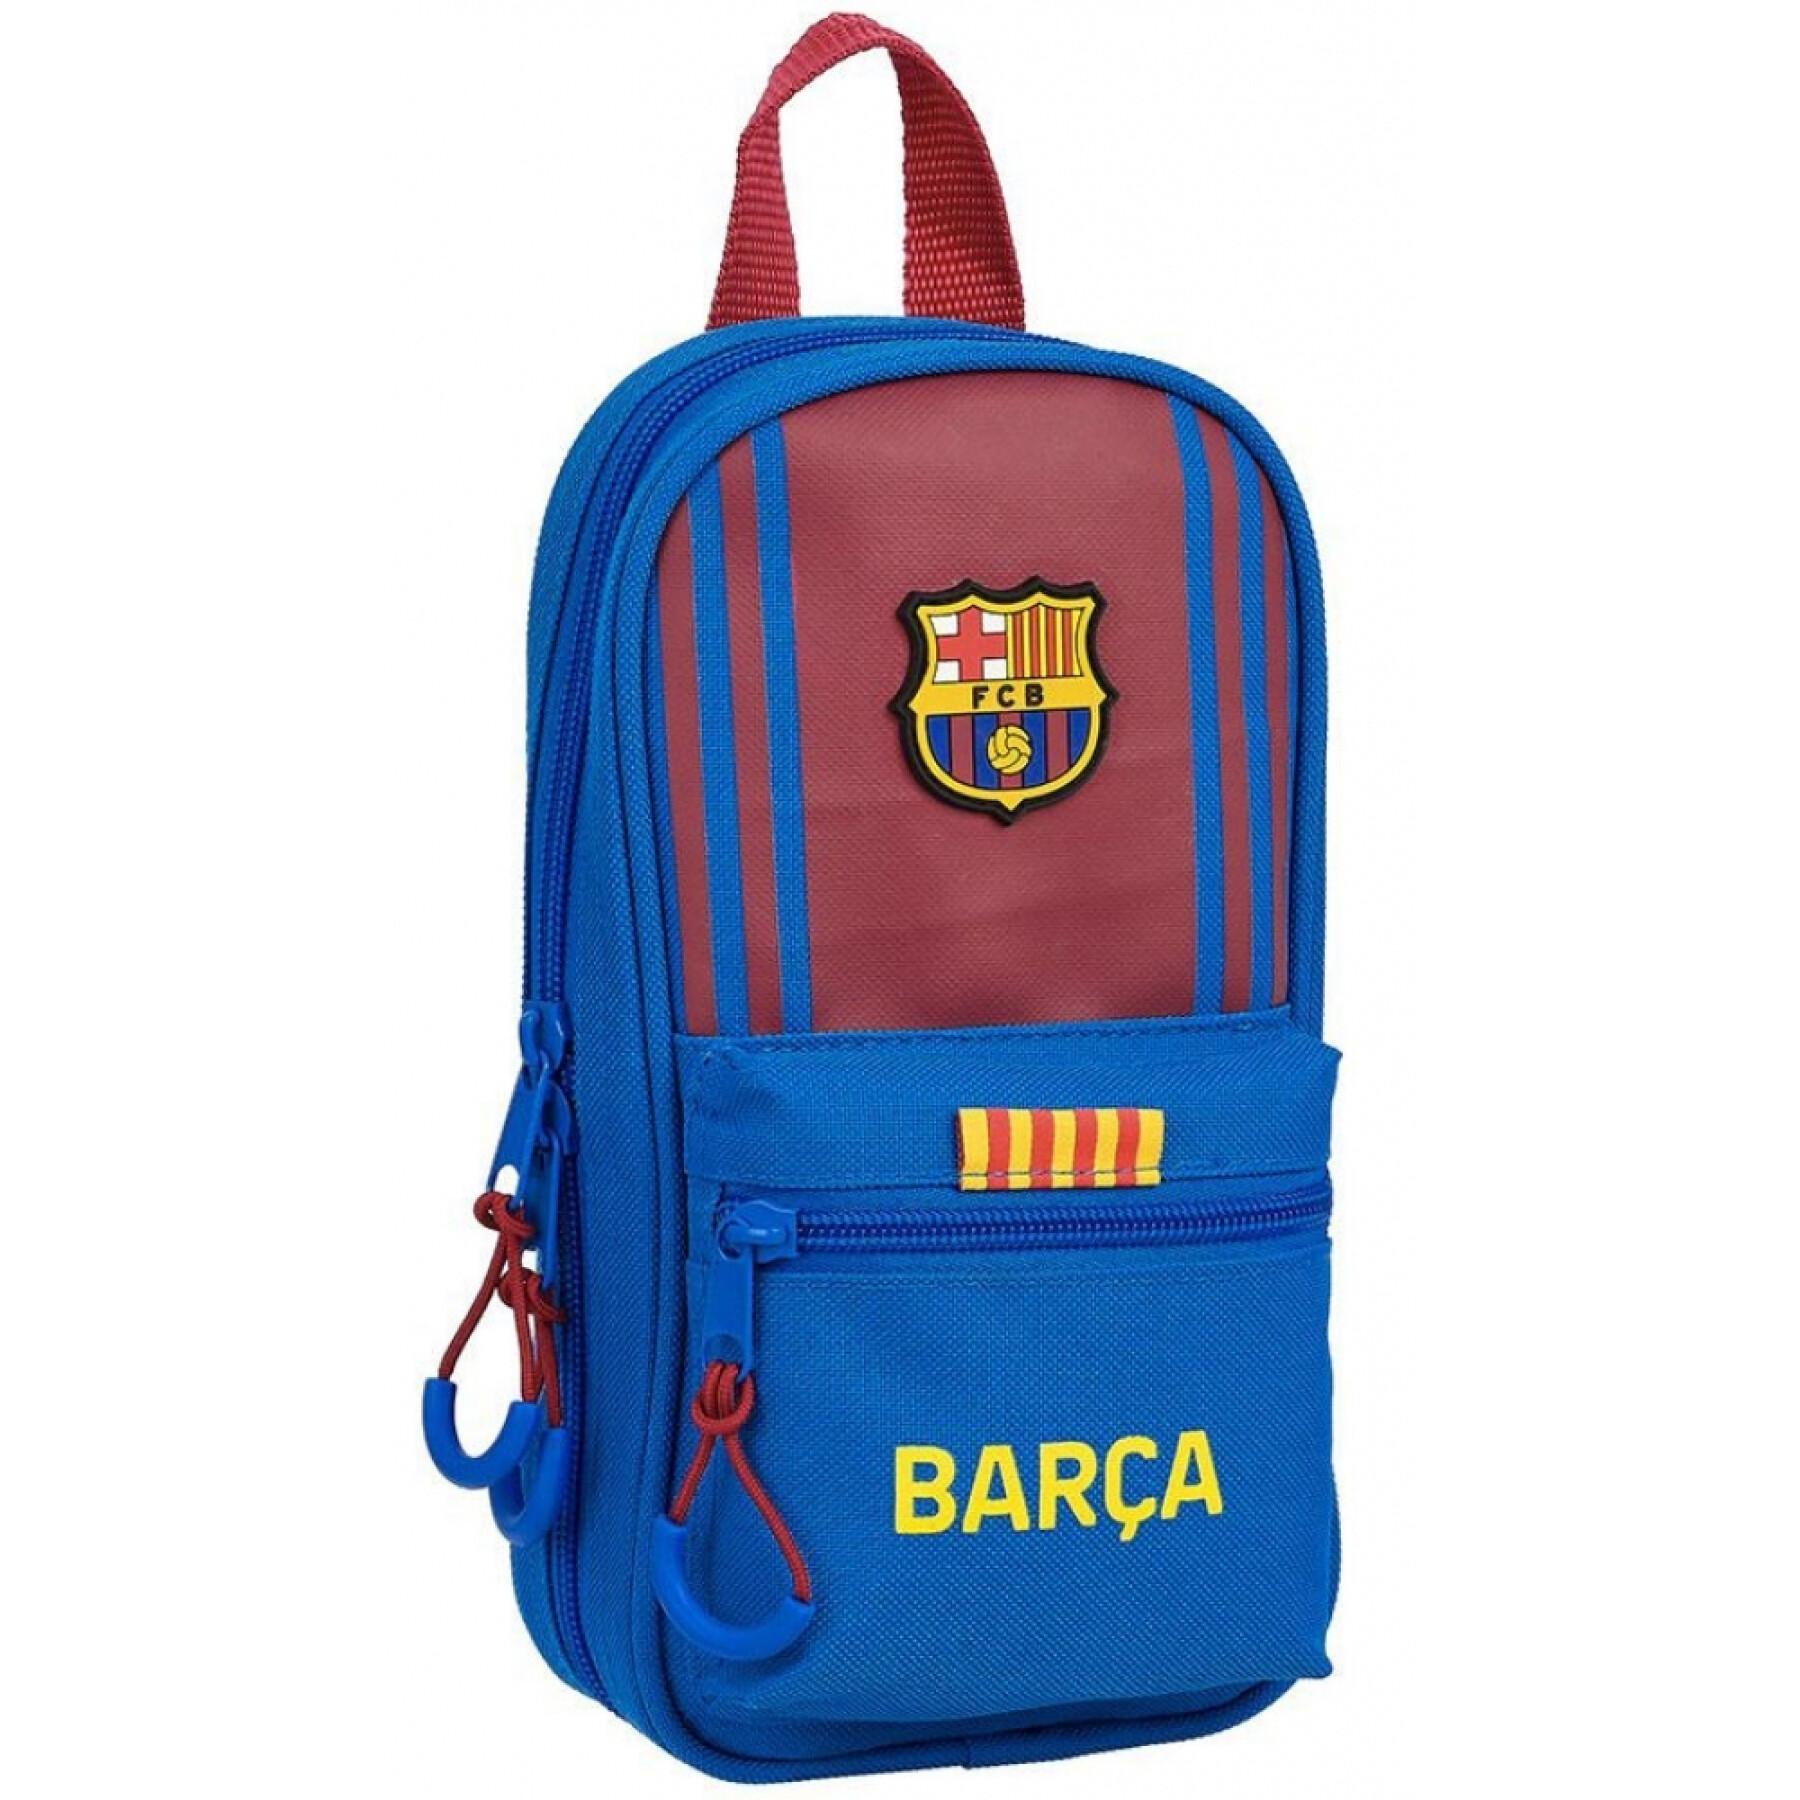 Astuccio per bambini FC Barcelona + 4 portapenne